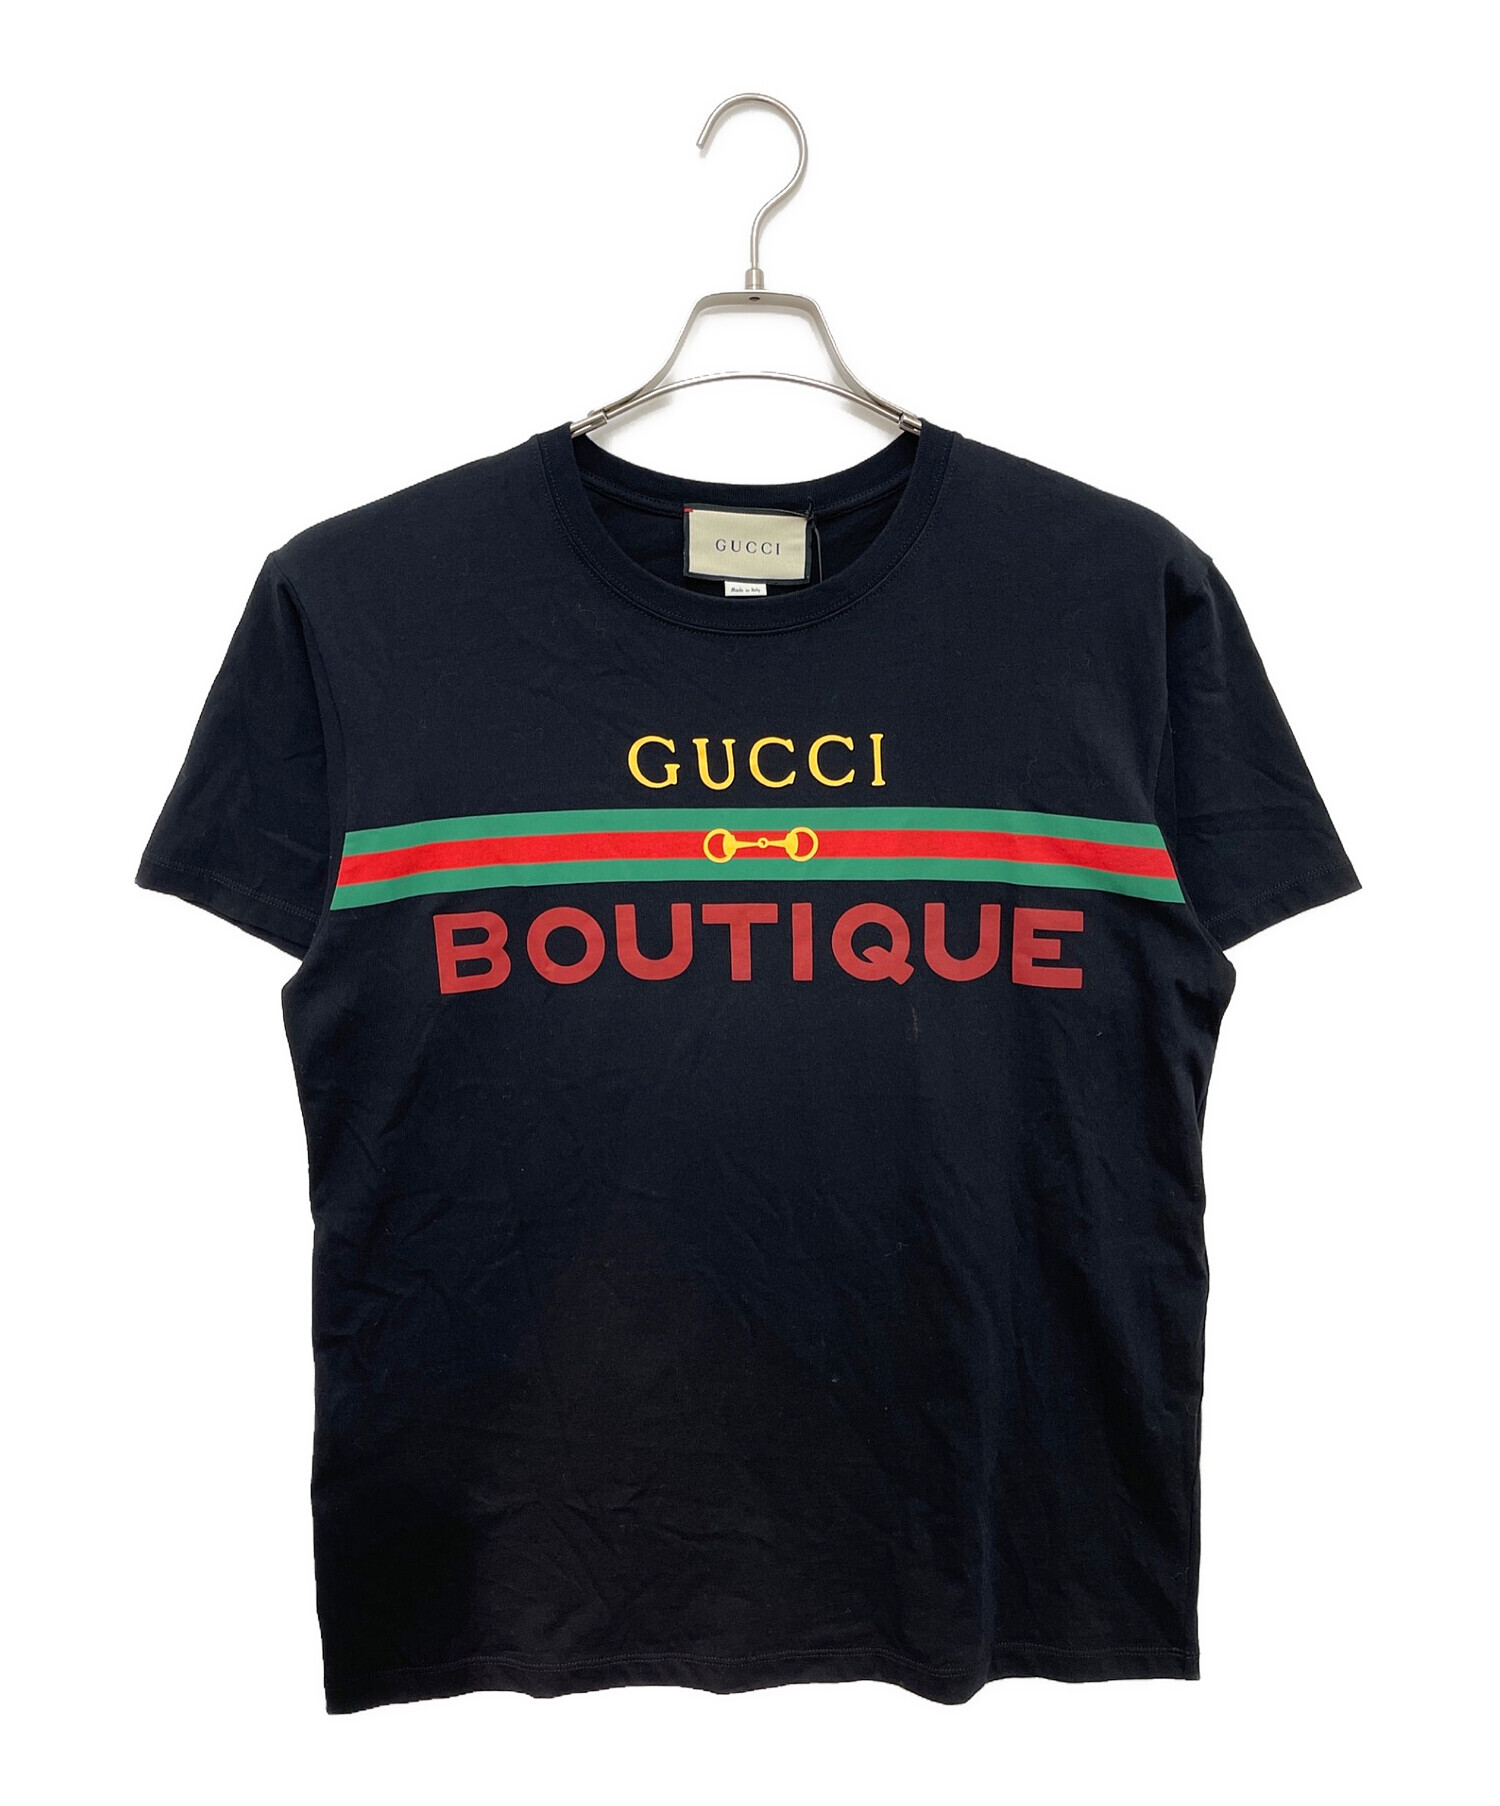 GUCCI (グッチ) オーバーサイズロゴTシャツ ブラック サイズ:XS